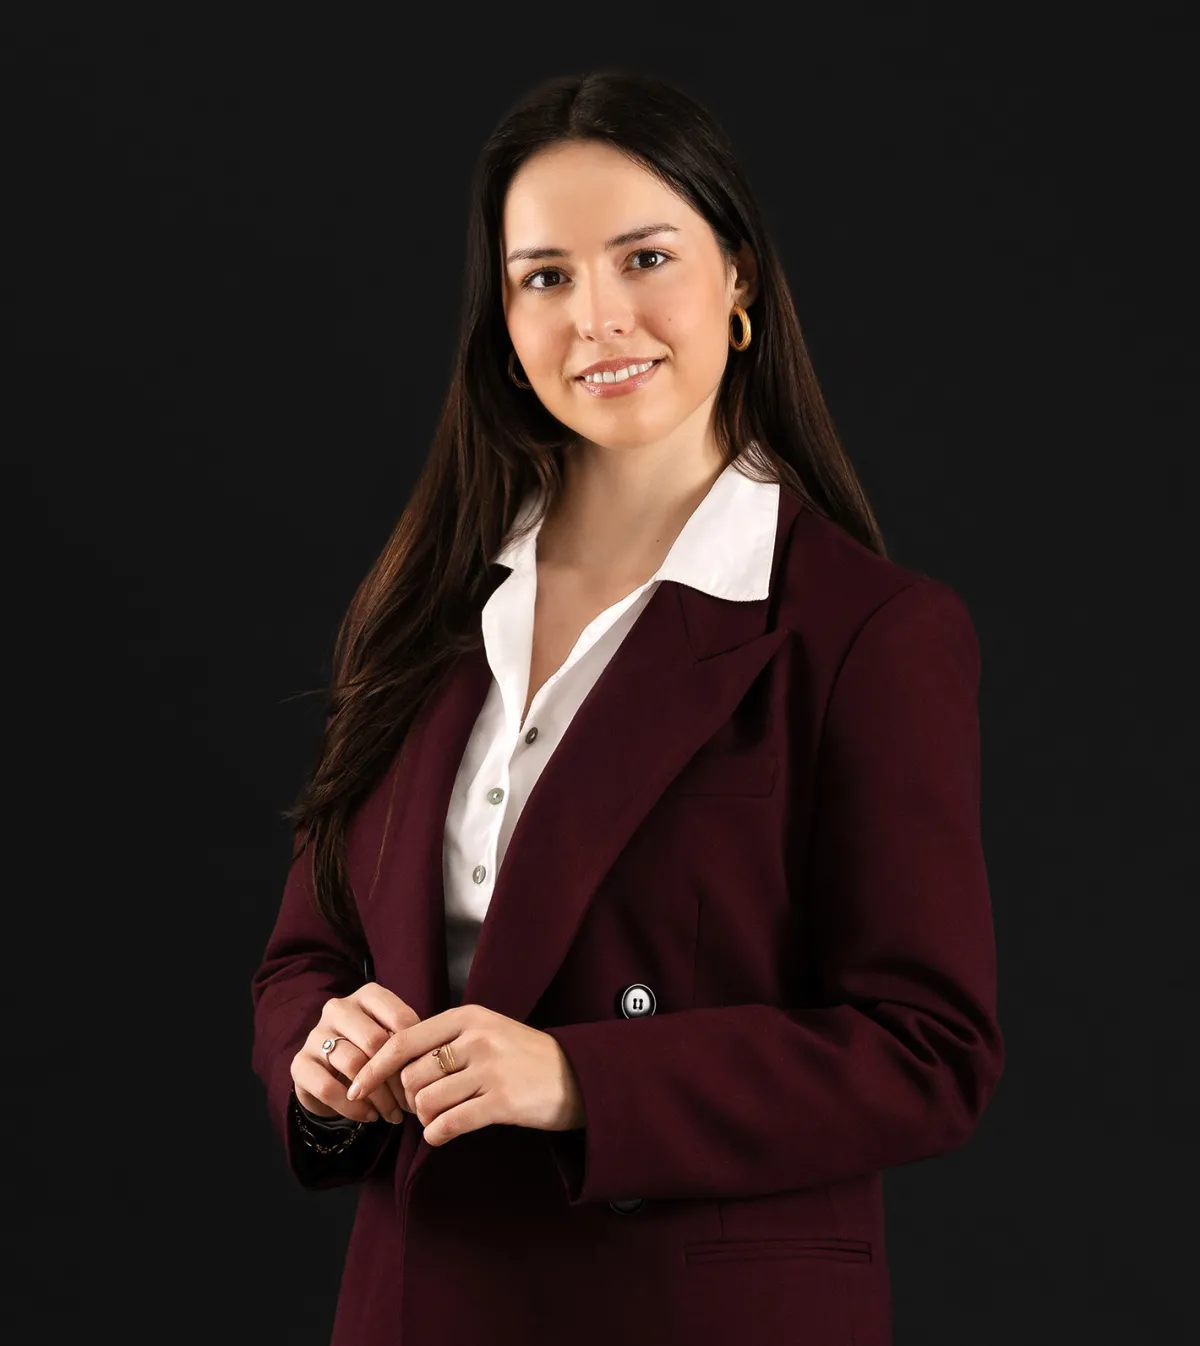 Diana Lopes Marques - Junior Consultant